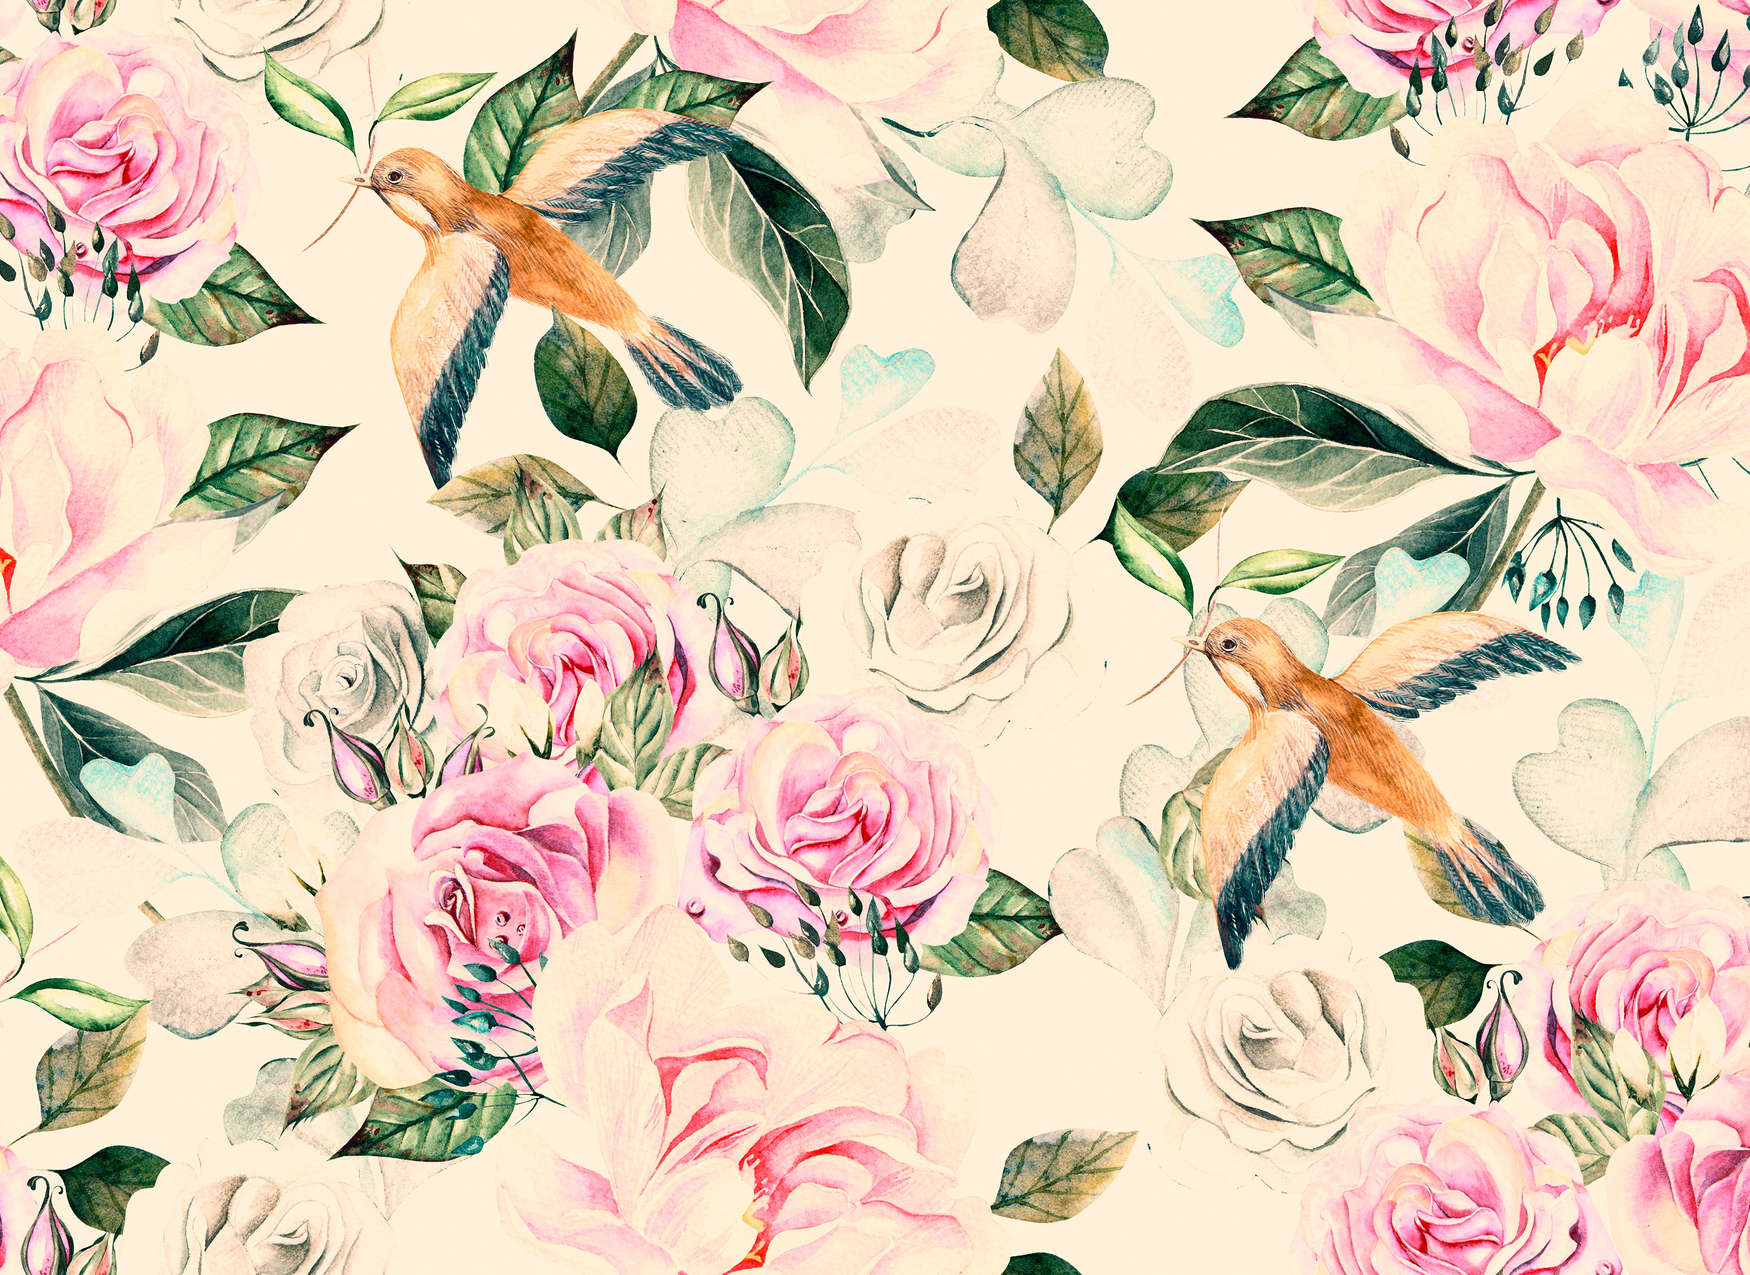             Flores y pájaros juguetones de estilo vintage - crema, rosa, verde
        